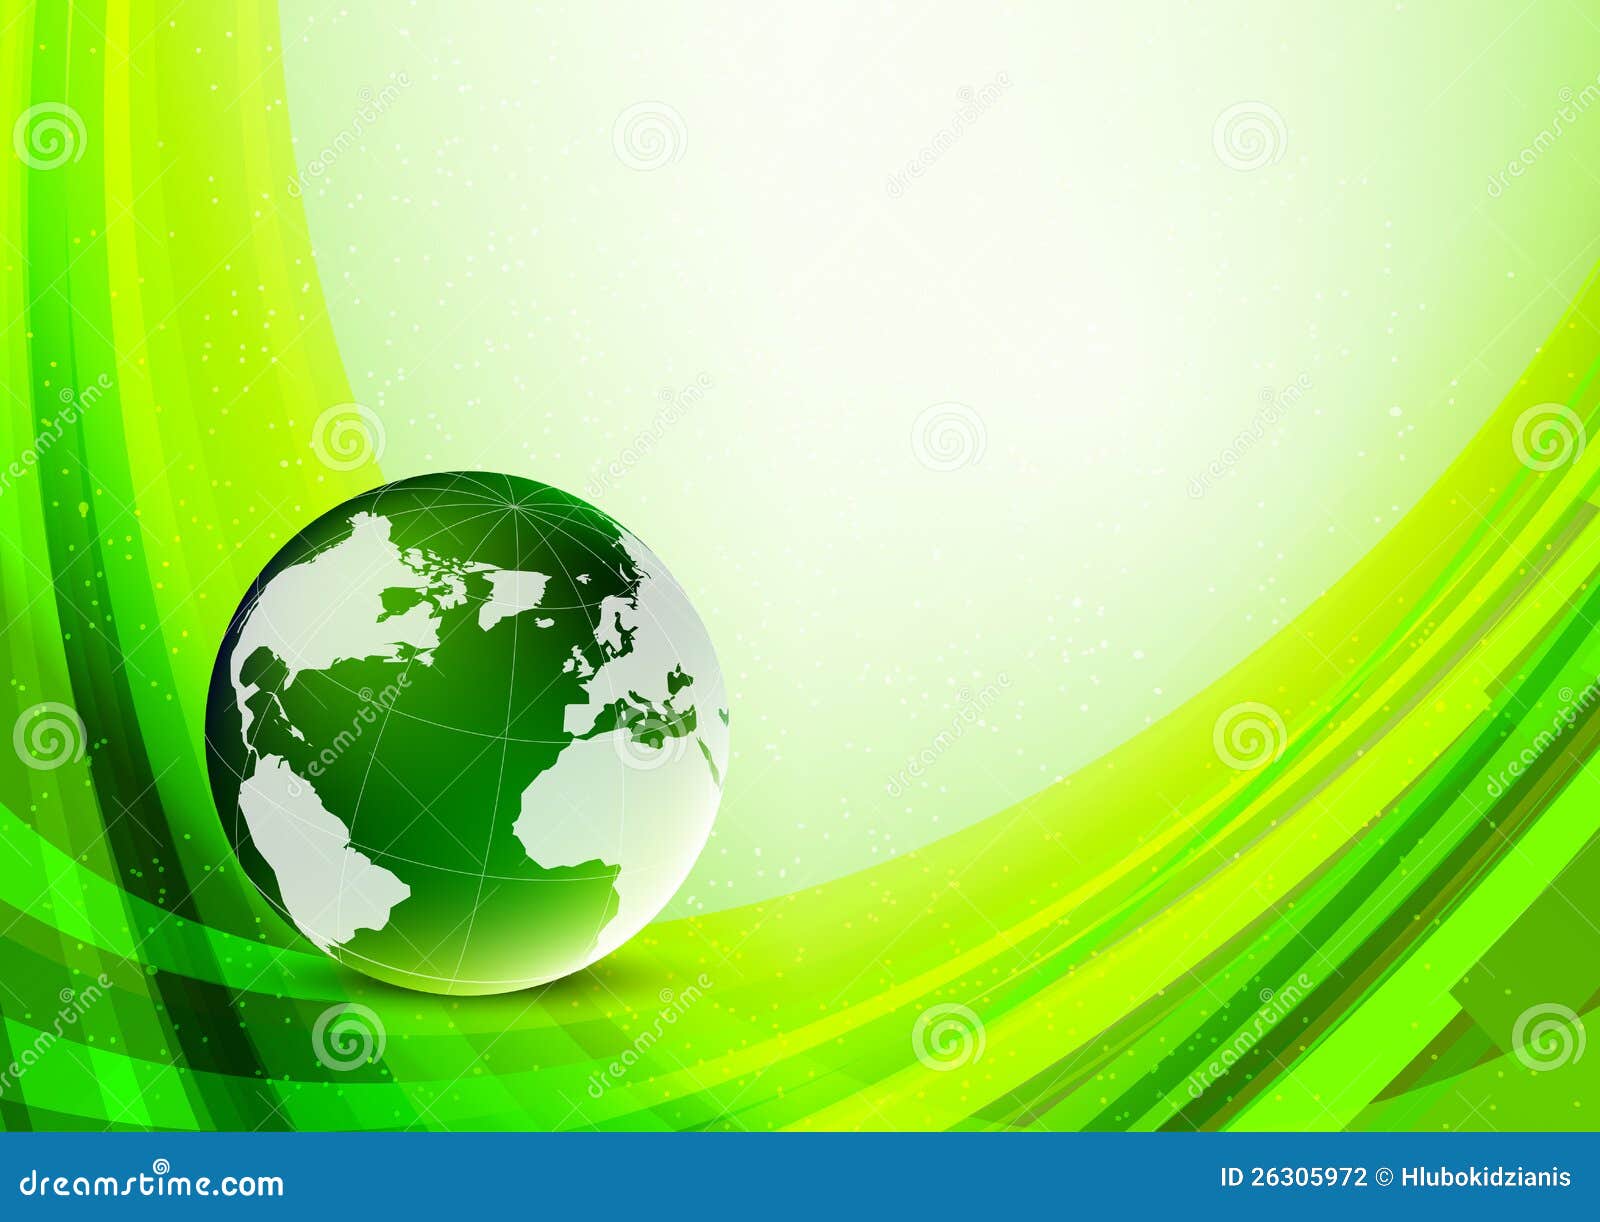 Hellgrüner Hintergrund Stockfotografie - Bild: 26305972